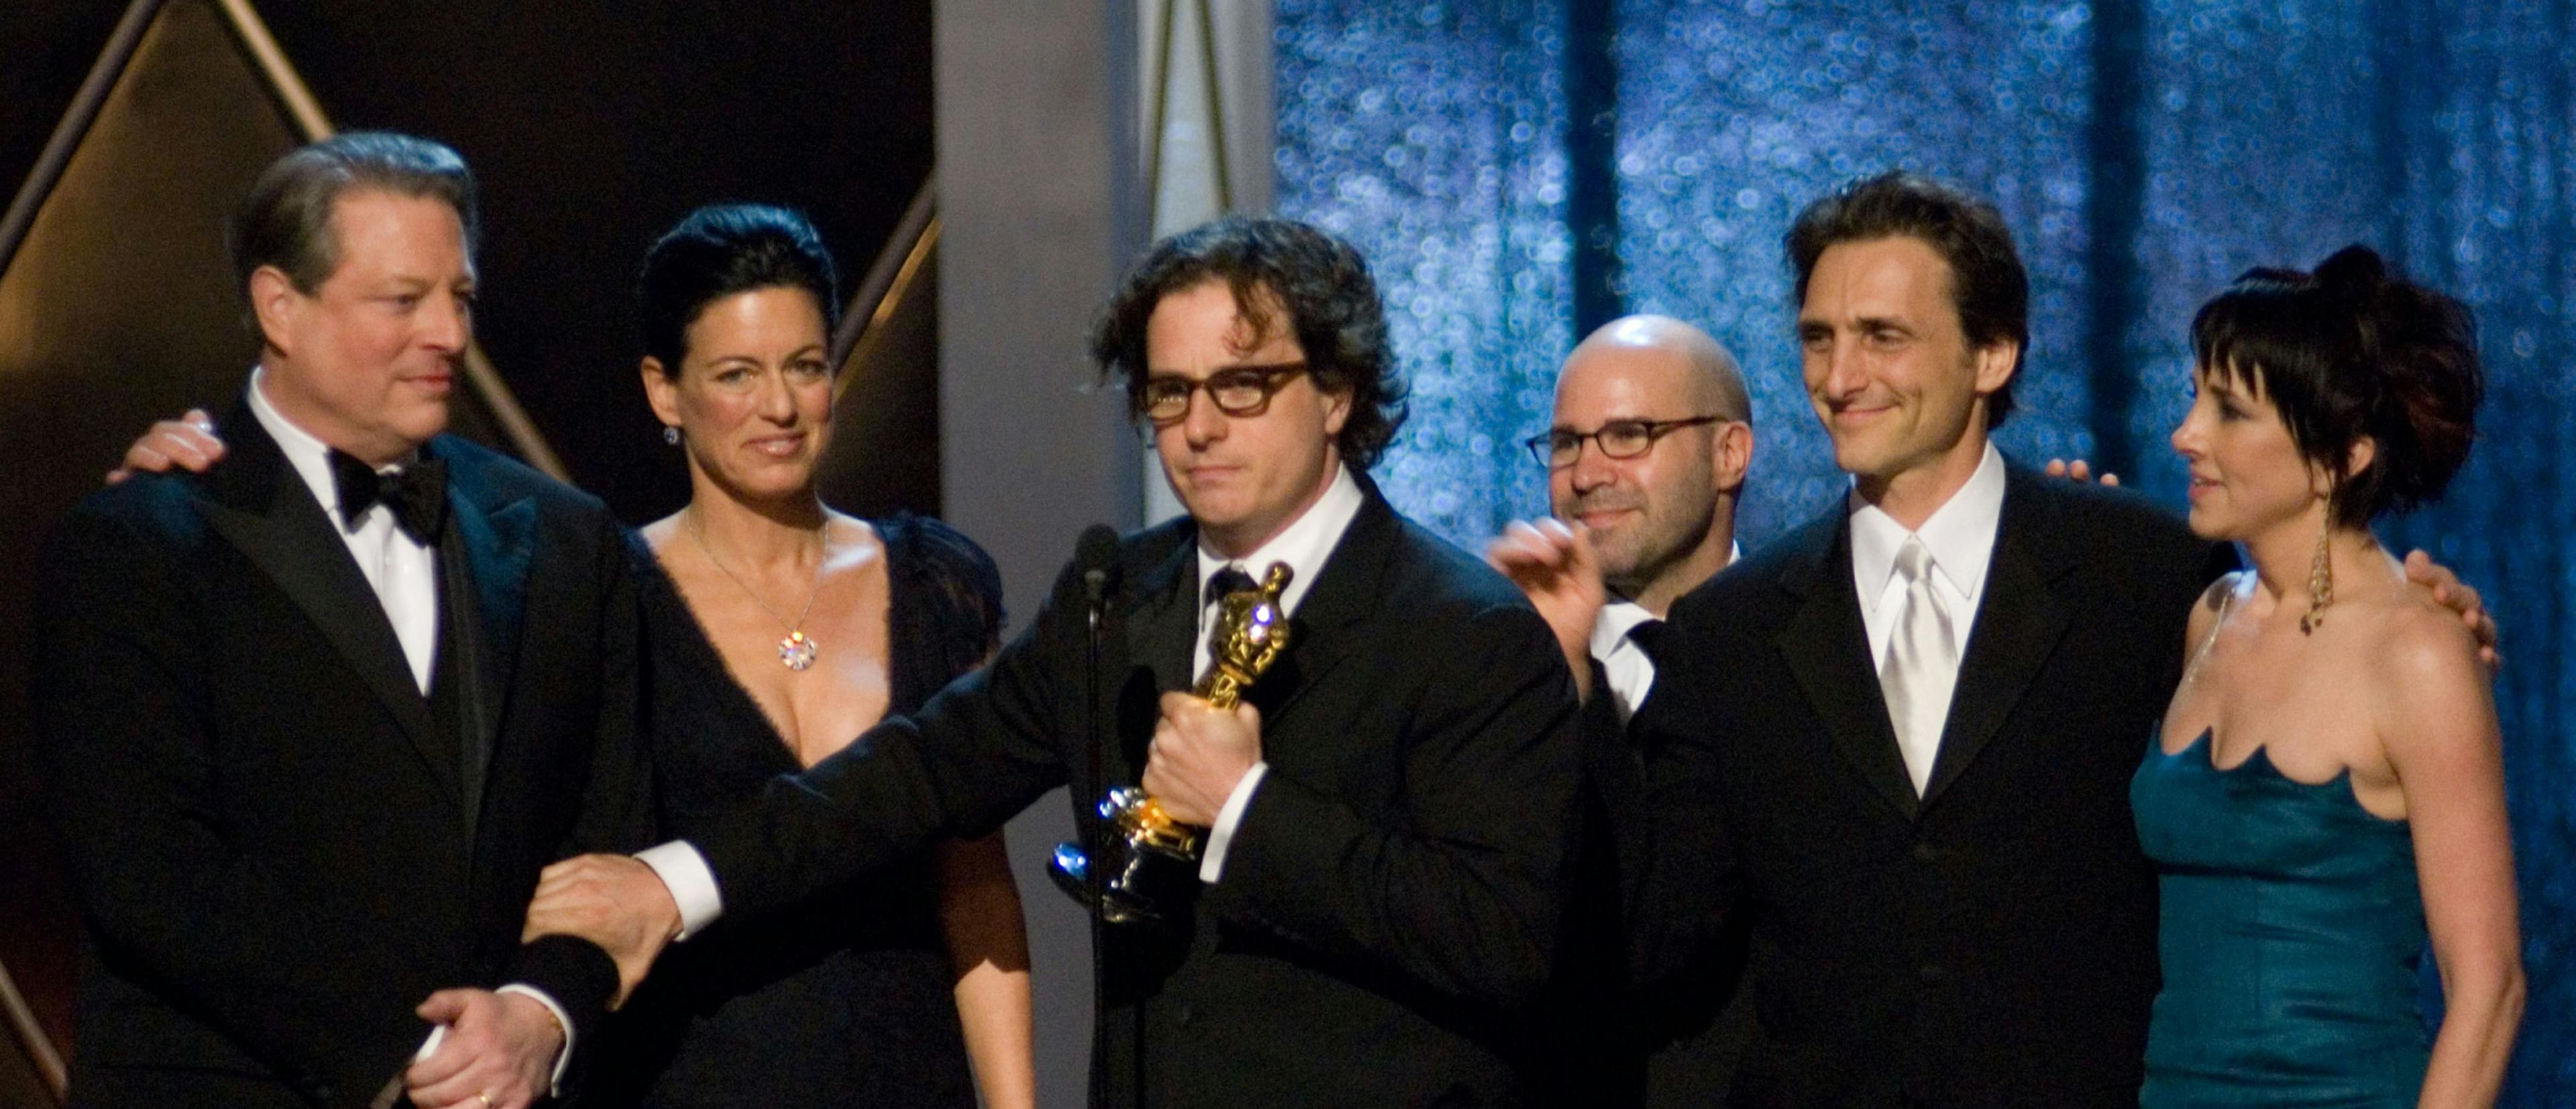 Davis Guggenheim acepta el Oscar a Mejor Documental por 'Una verdad incómoda' en los Oscar de 2007. Junto a él, Al Gore, Laurie David, Jeff Skoll, Lawrence Bender y  Lesley Chilcott